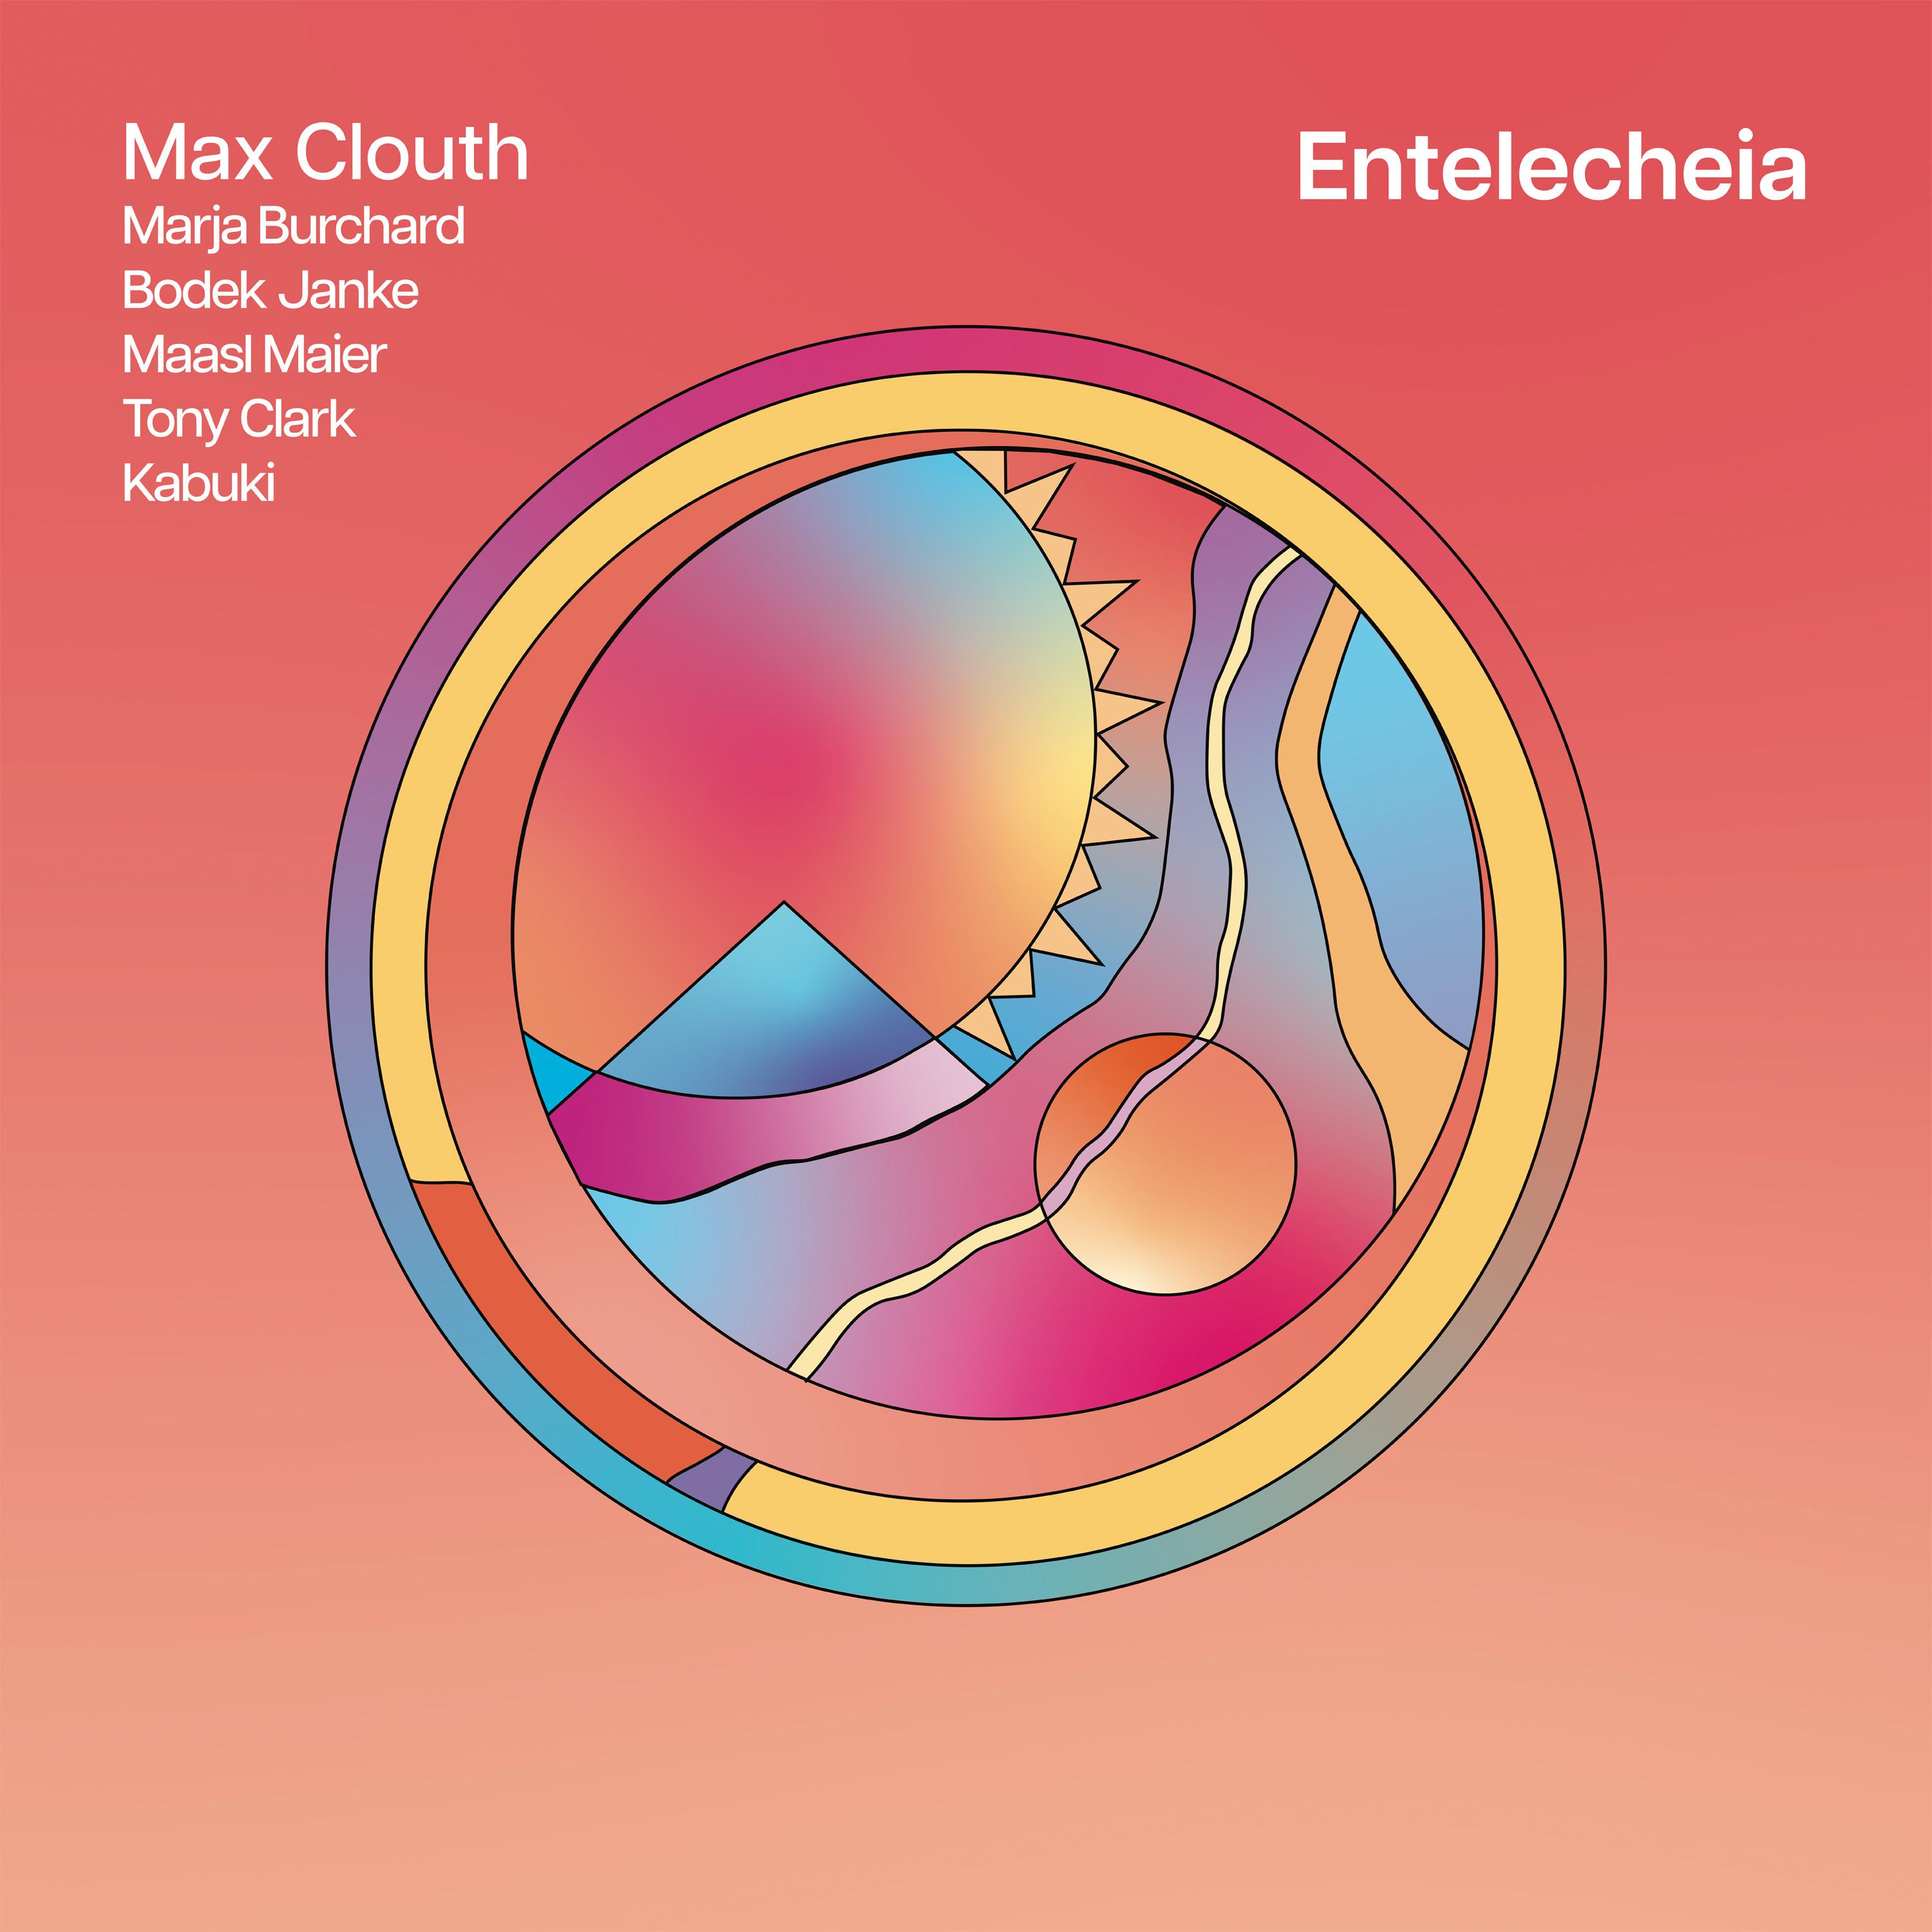 Max Clouth - Deszendent-Sagittarius